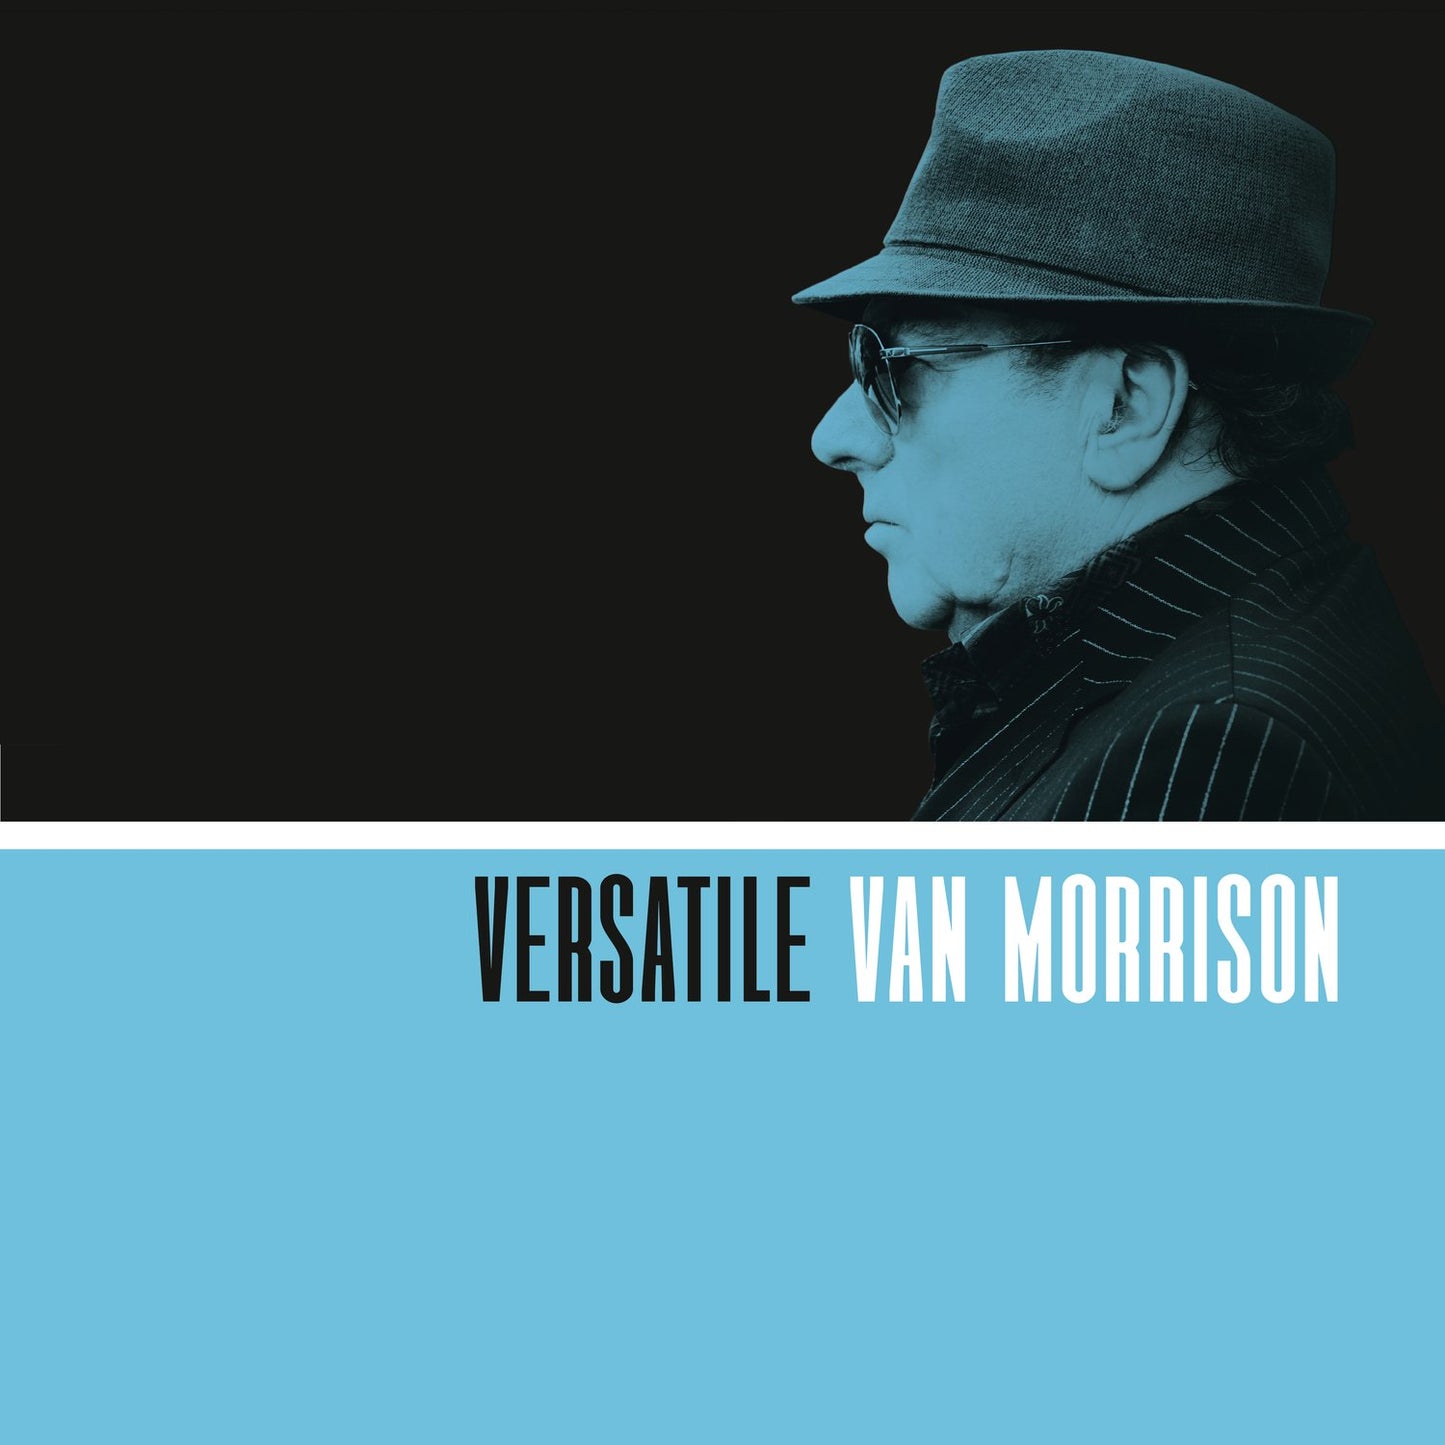 Van Morrison -Versatile